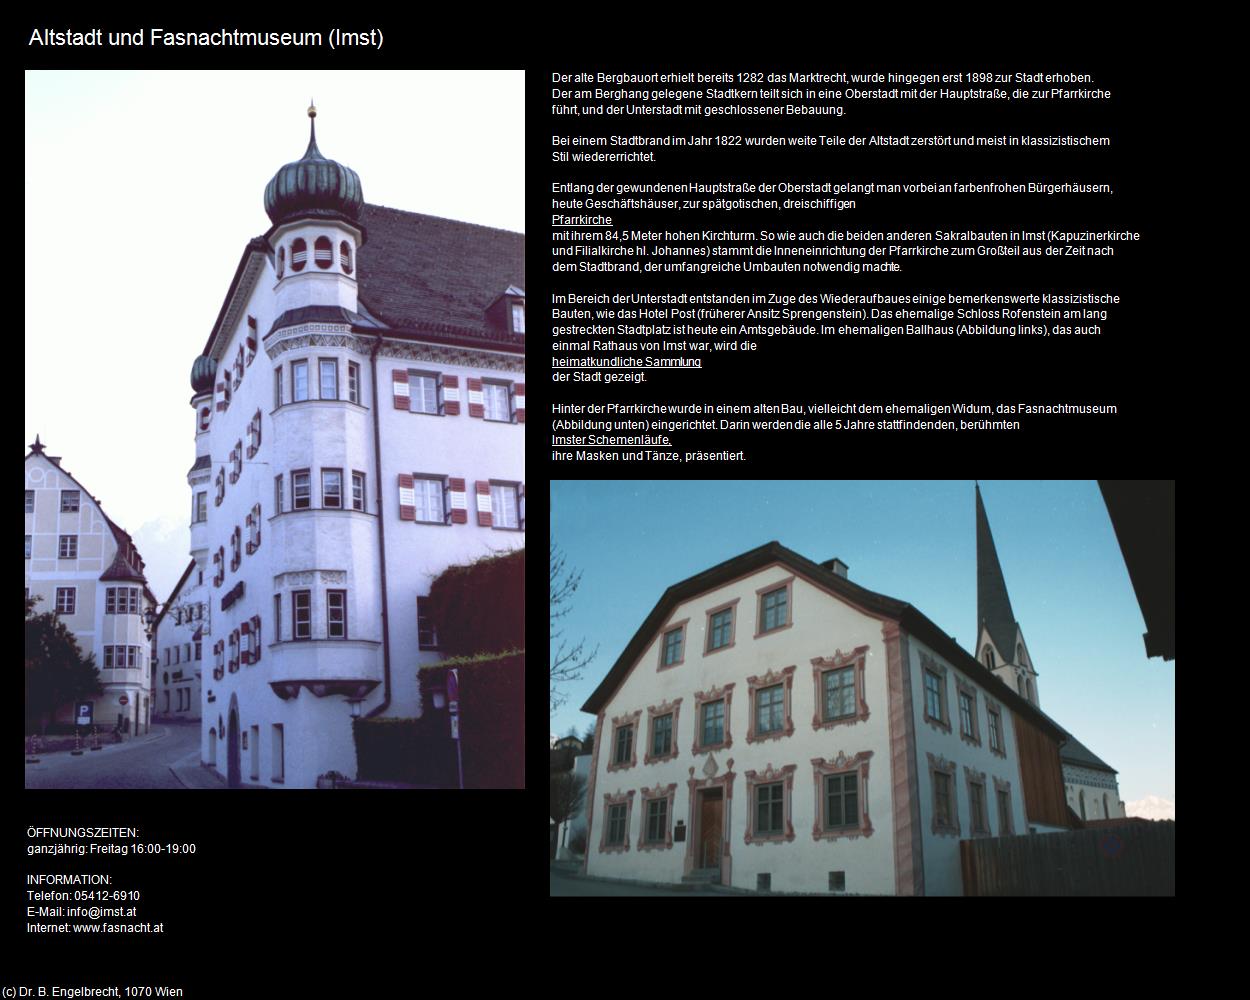 Altstadt mit Fasnachtmuseum (Imst) in Kulturatlas-TIROL(c)B.Engelbrecht